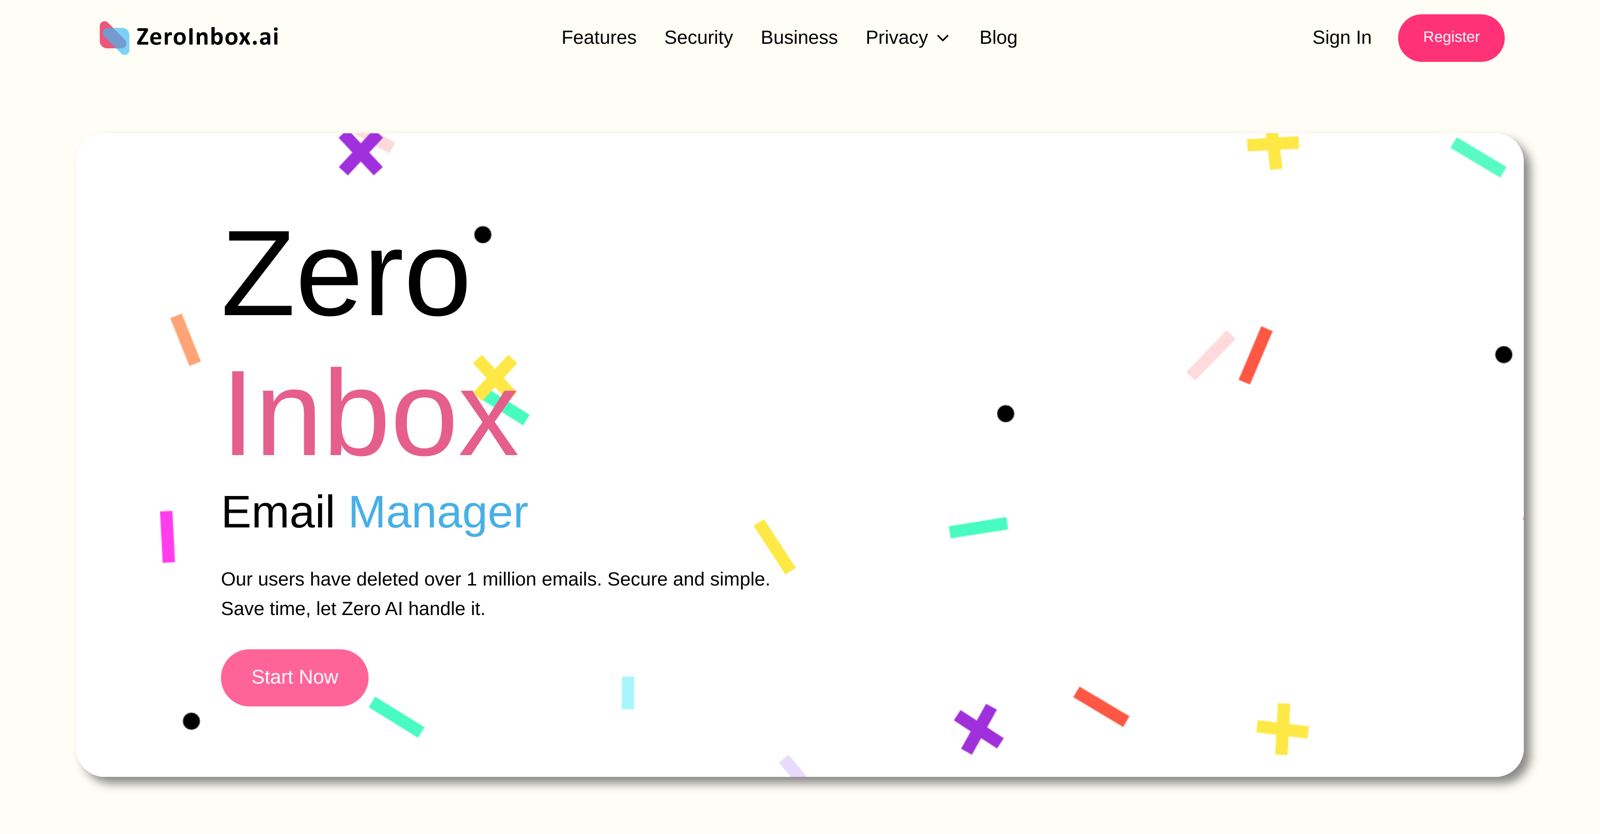 ZeroInbox website